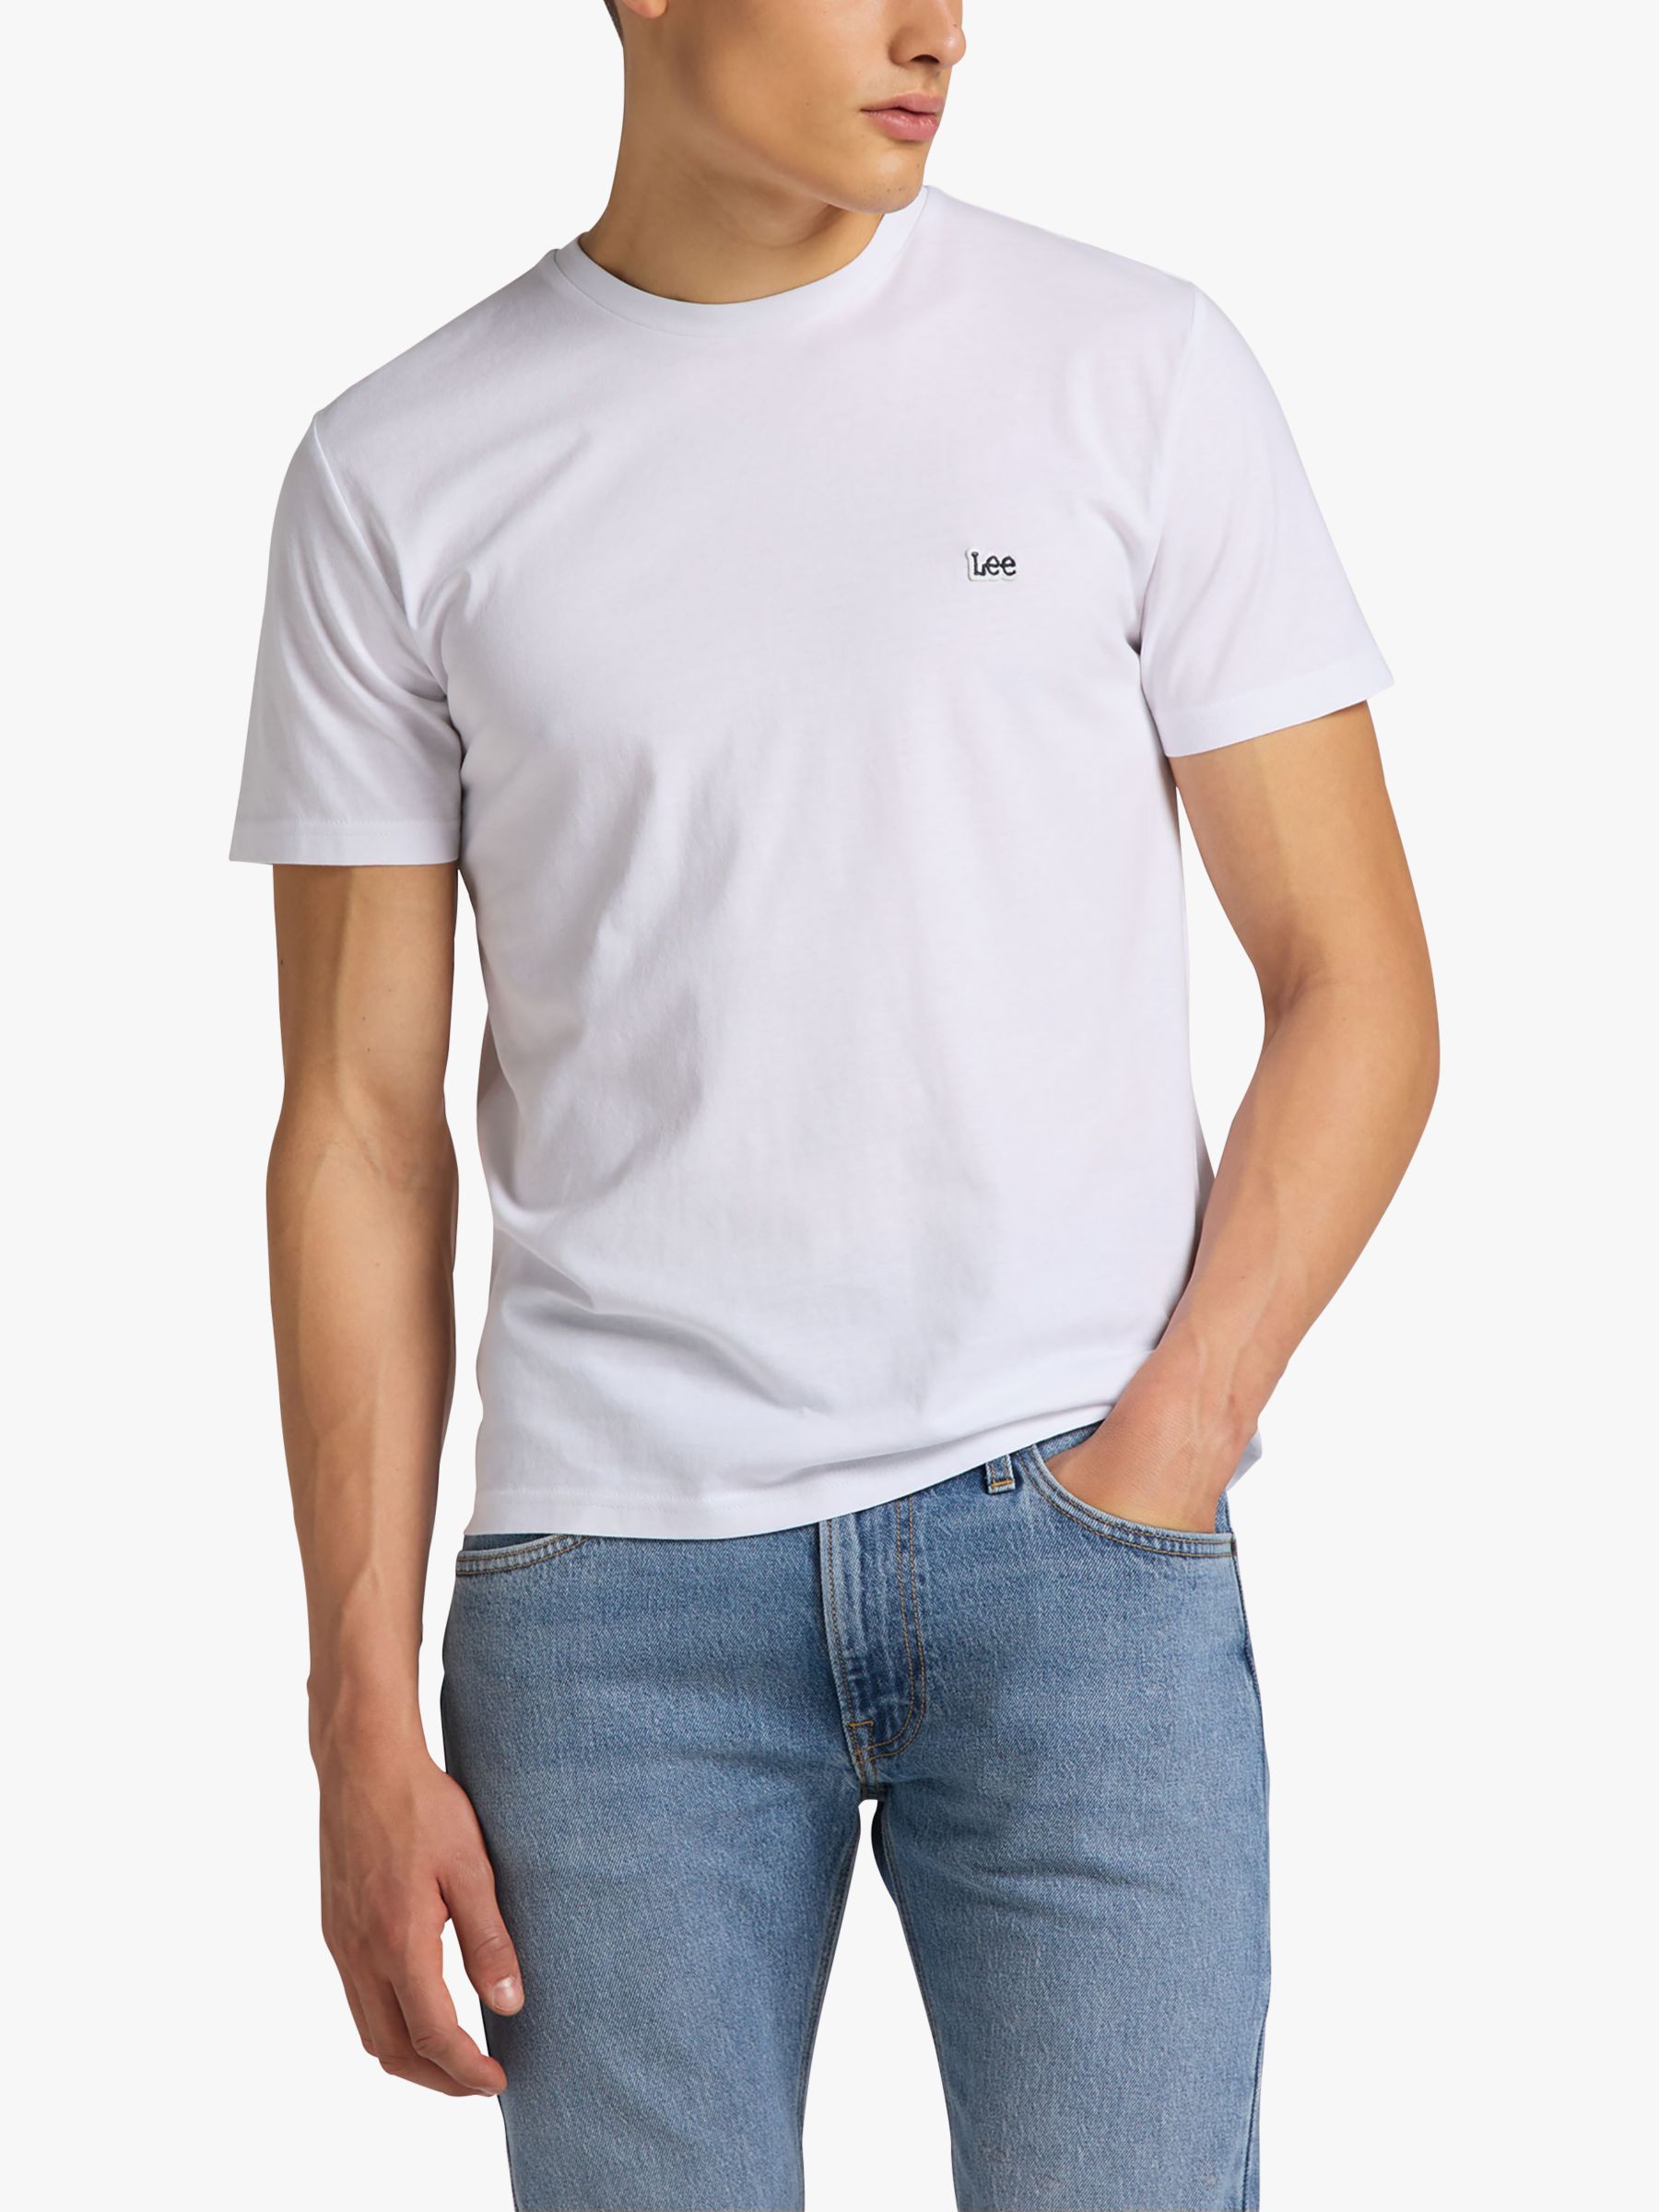 Lee Regular Fit Cotton Logo T-Shirt, White at John Lewis & Partners